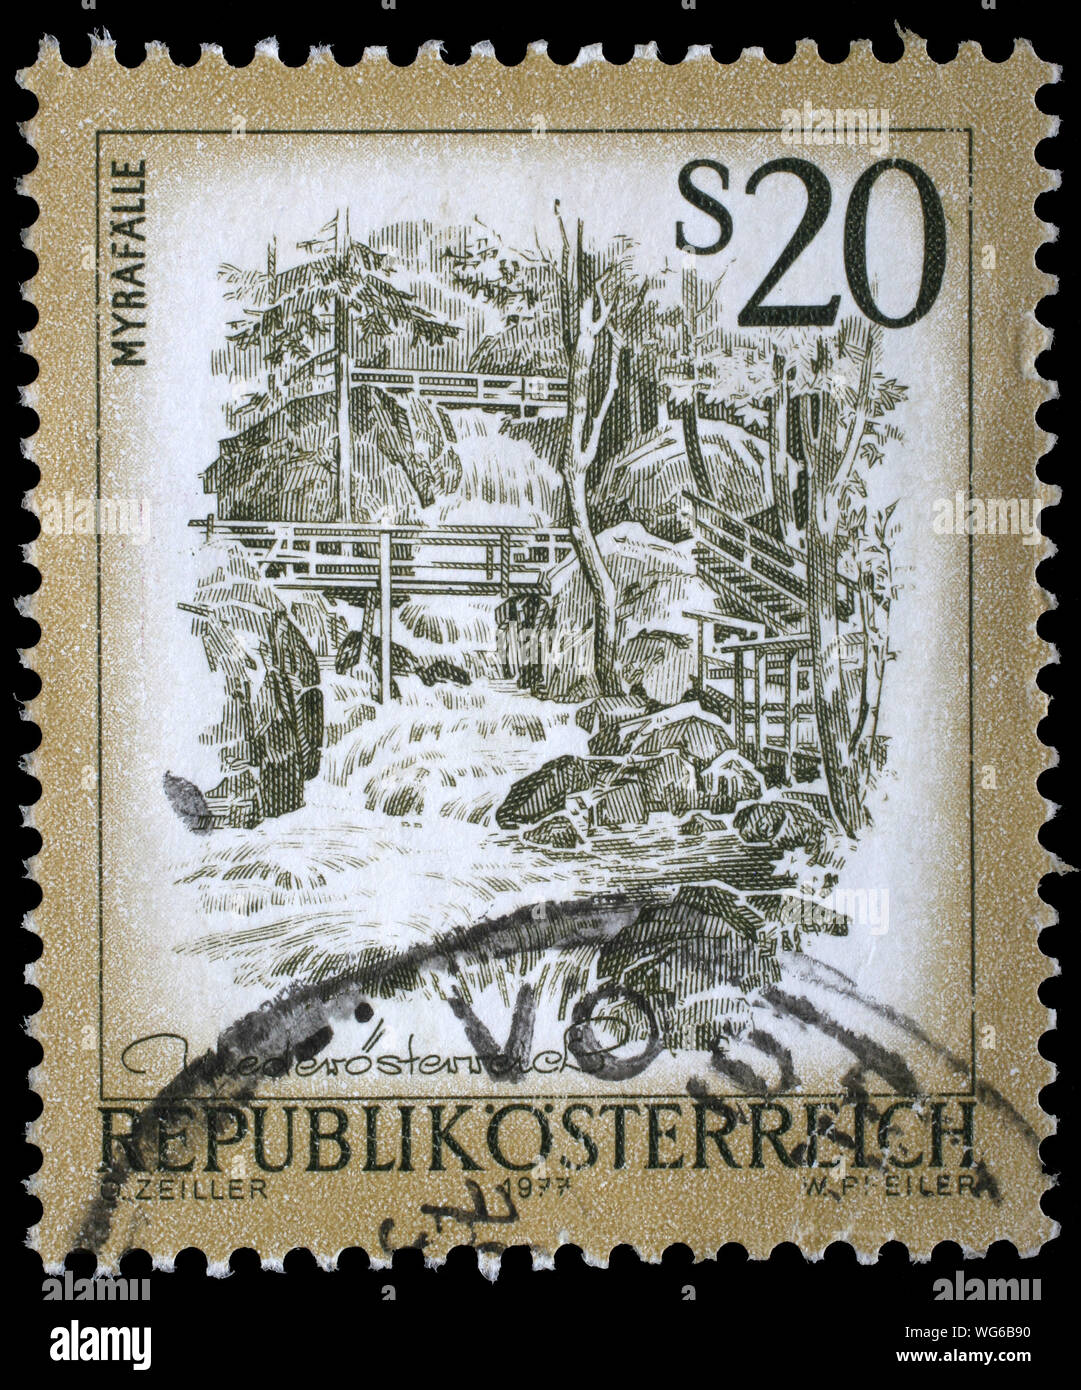 Stempel gedruckt in Österreich zeigt Myrafalle, aus der serie Ugregelung in Österreich", ca. 1977. Stockfoto